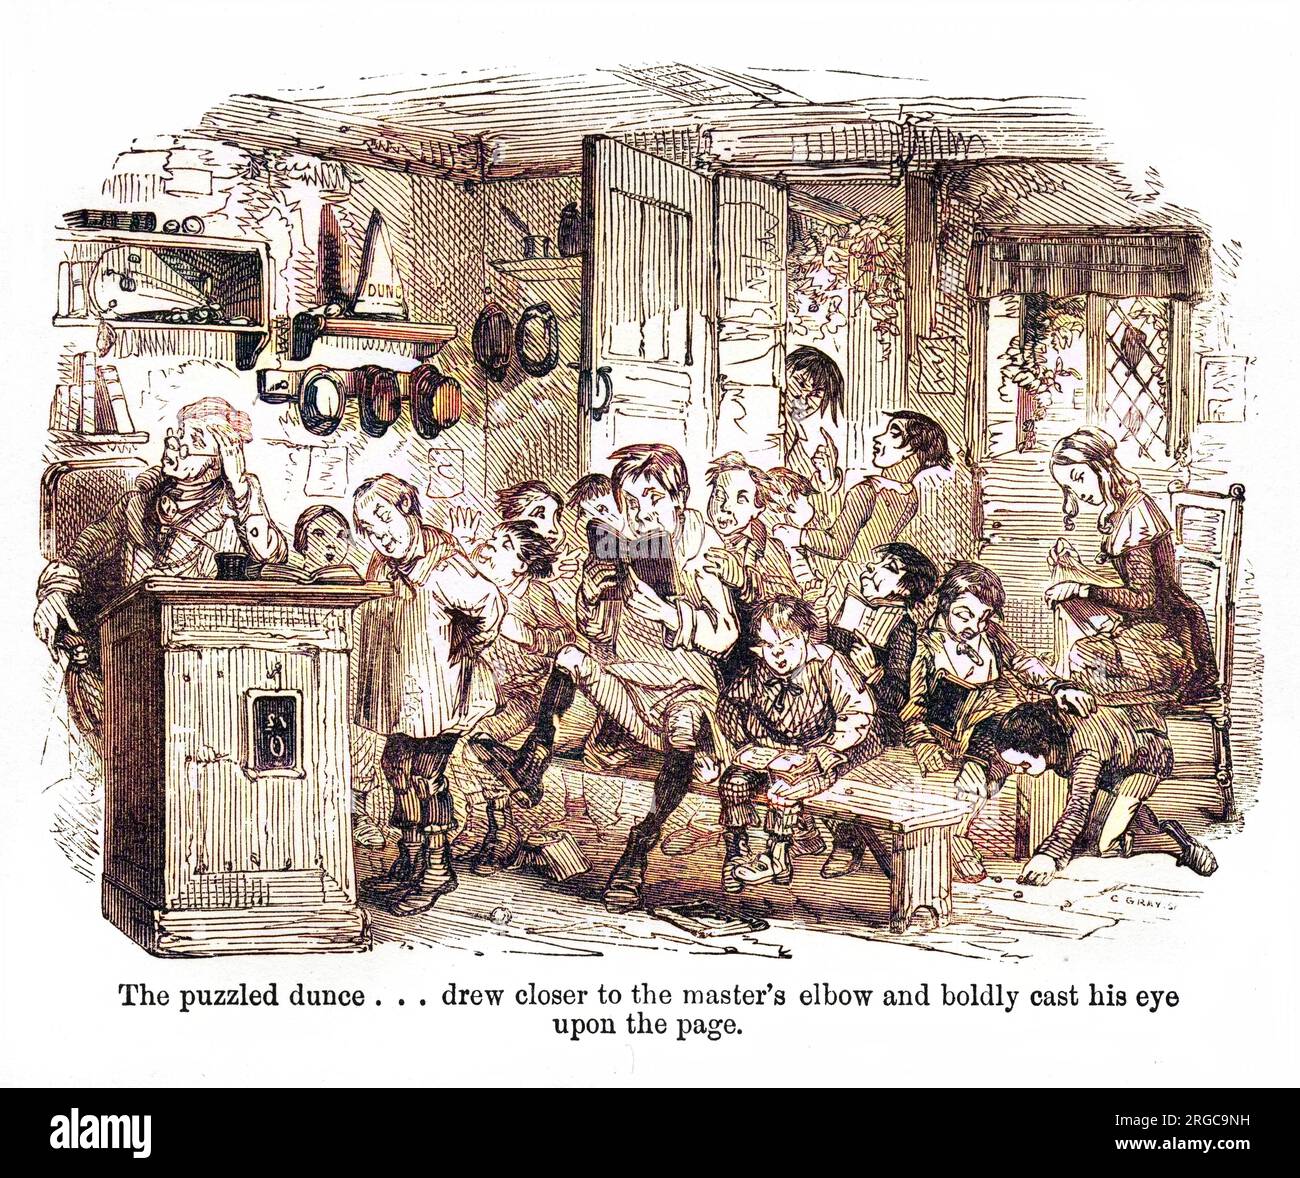 The Old Curiosity Shop de Charles Dickens, d'abord publié dans la série hebdomadaire Master Humphrey's Clock de 1840 à 1841 et ensuite comme son propre livre en 1841. Le jeu de dunce perplexe ... s'est rapproché du coude du maître et a vigoureusement jeté son œil sur la page. Banque D'Images